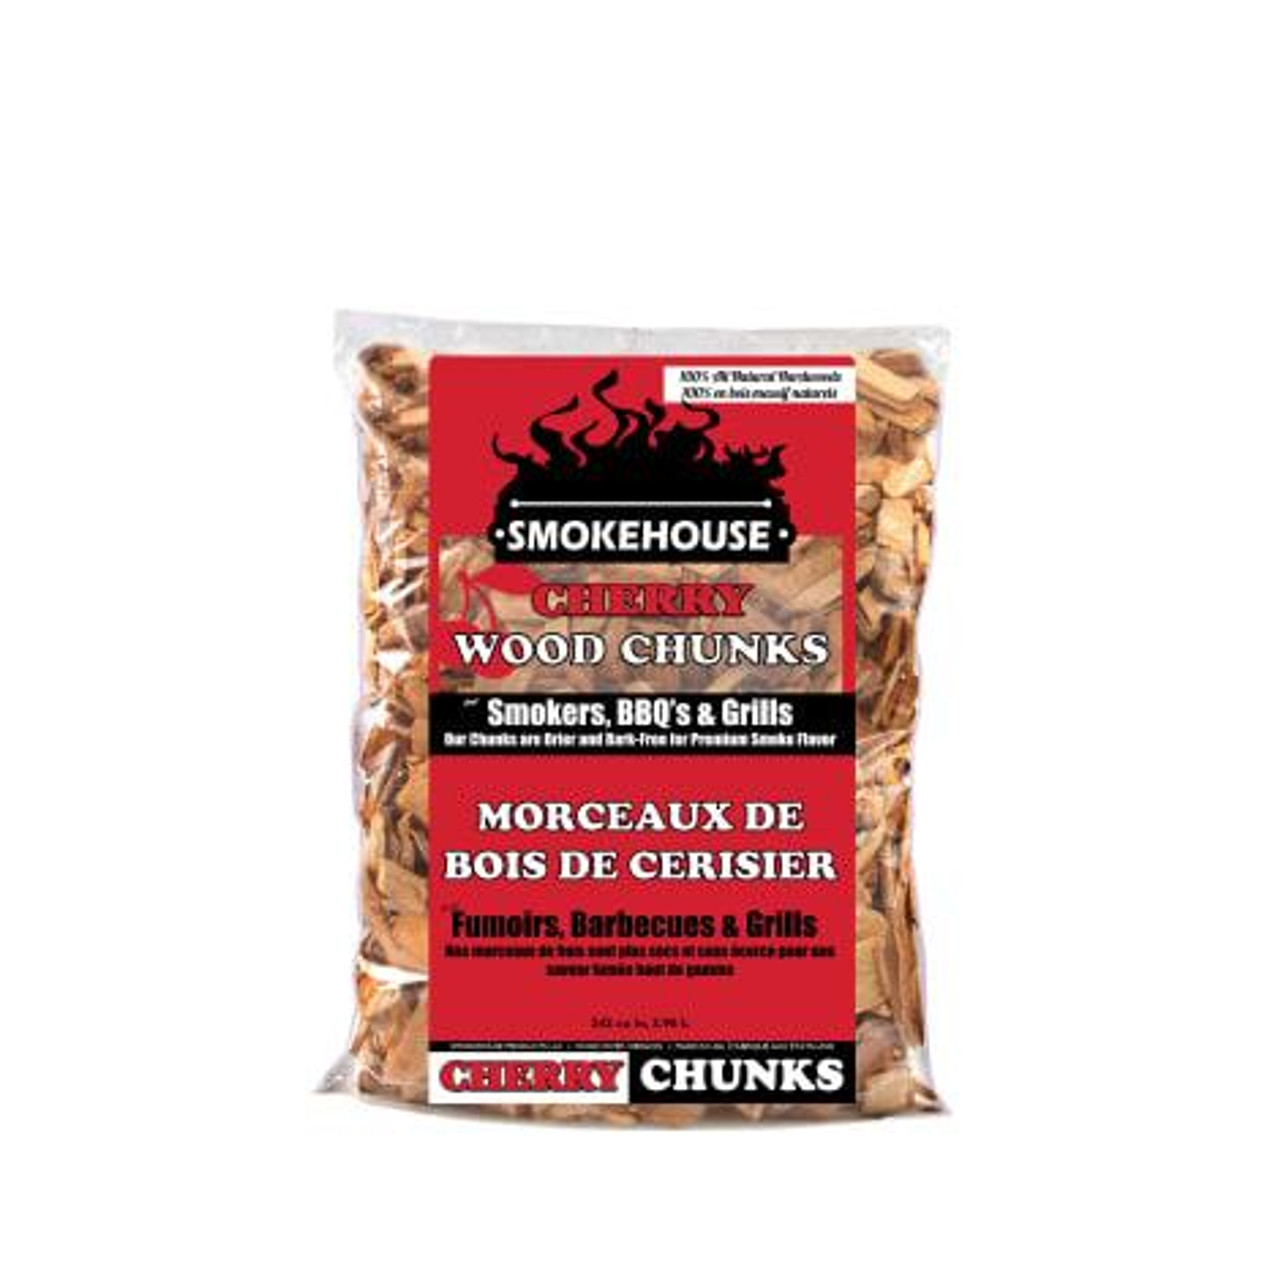 Smokehouse Wood Chunks 1.75 Lb Bag, Cherry